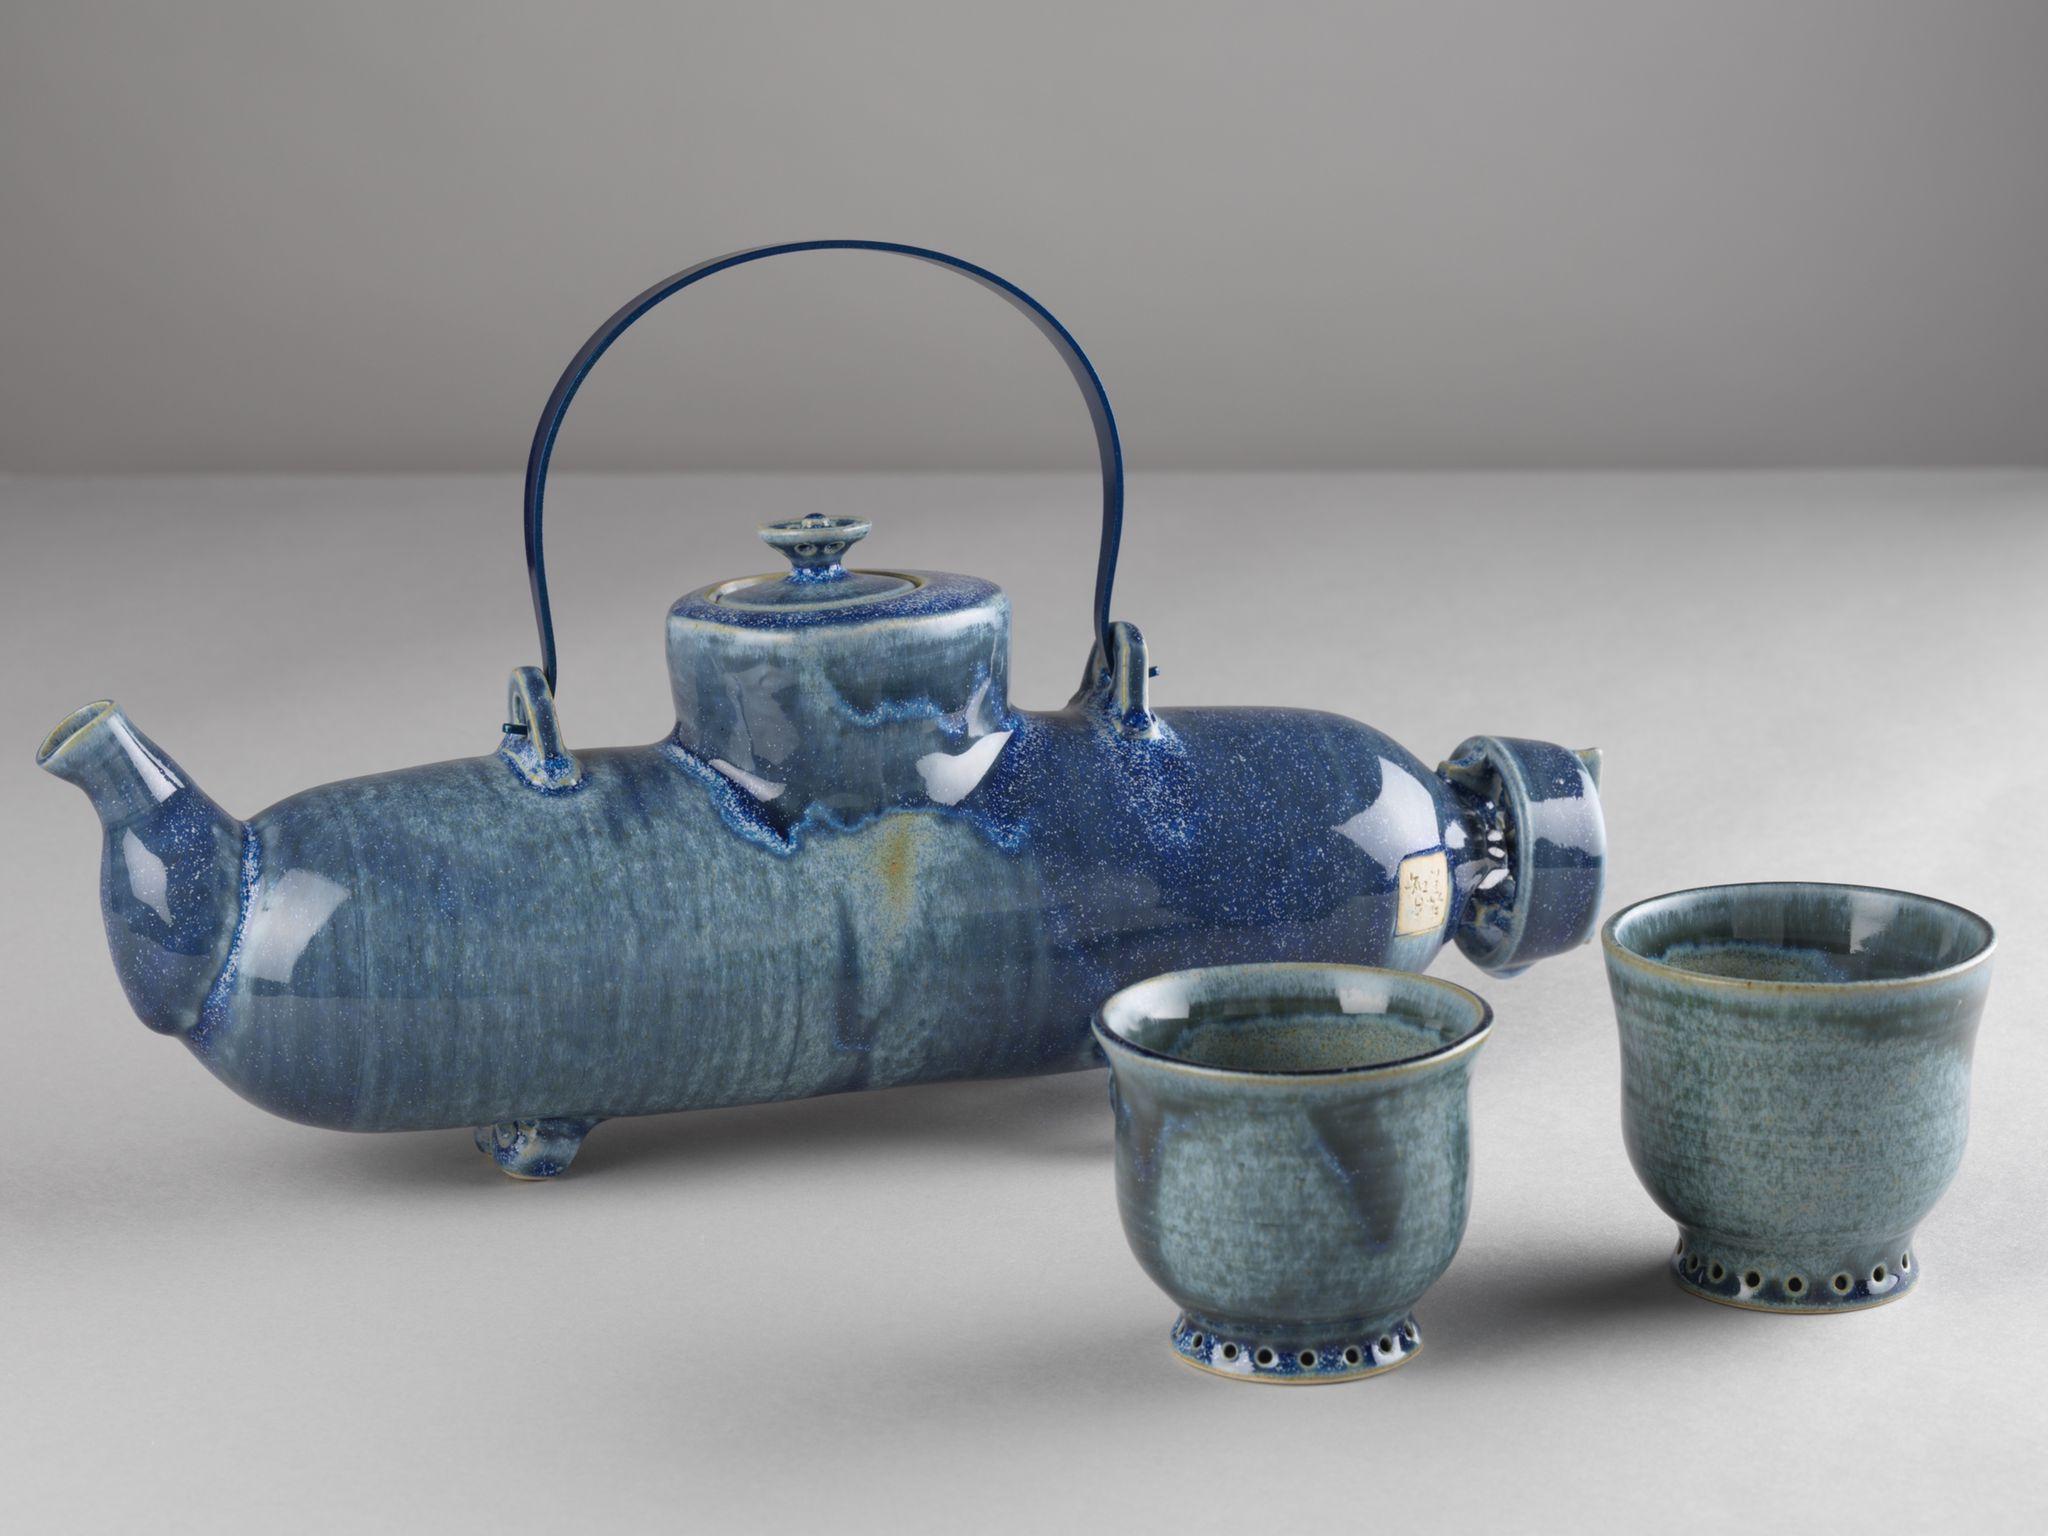 茶具文物館現正舉行「陶瓷茶具創作展覽2021」。圖示公開組季軍得主司徒健的作品《大海航行靠舵手》。